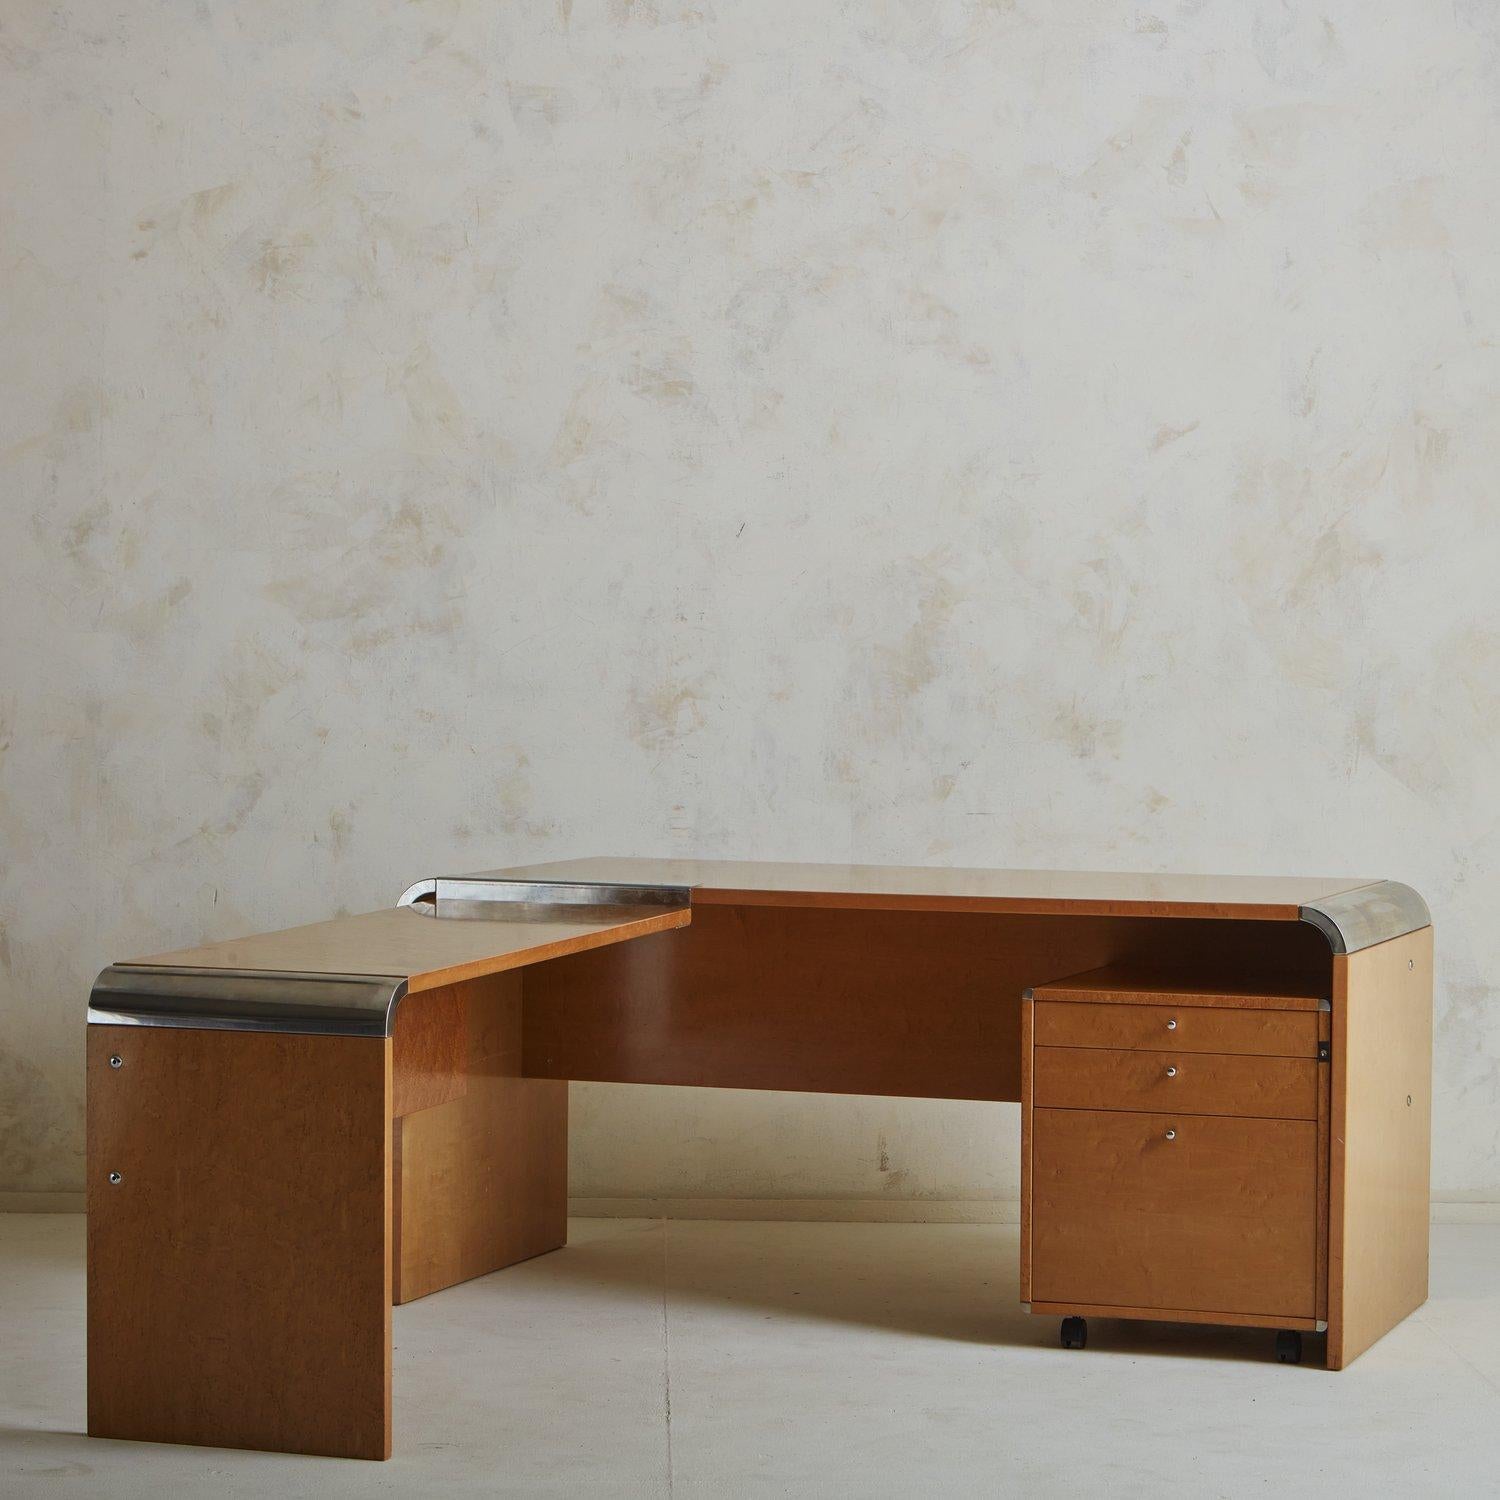 Ein seltener italienischer Schreibtisch, entworfen von Giovanni Offredi für Saporiti in den 1970er Jahren. Dieser Schreibtisch besteht aus einem Hauptteil und einer zusätzlichen Tischplatte, die eine L-Form bildet. Er wurde aus Holz gefertigt und